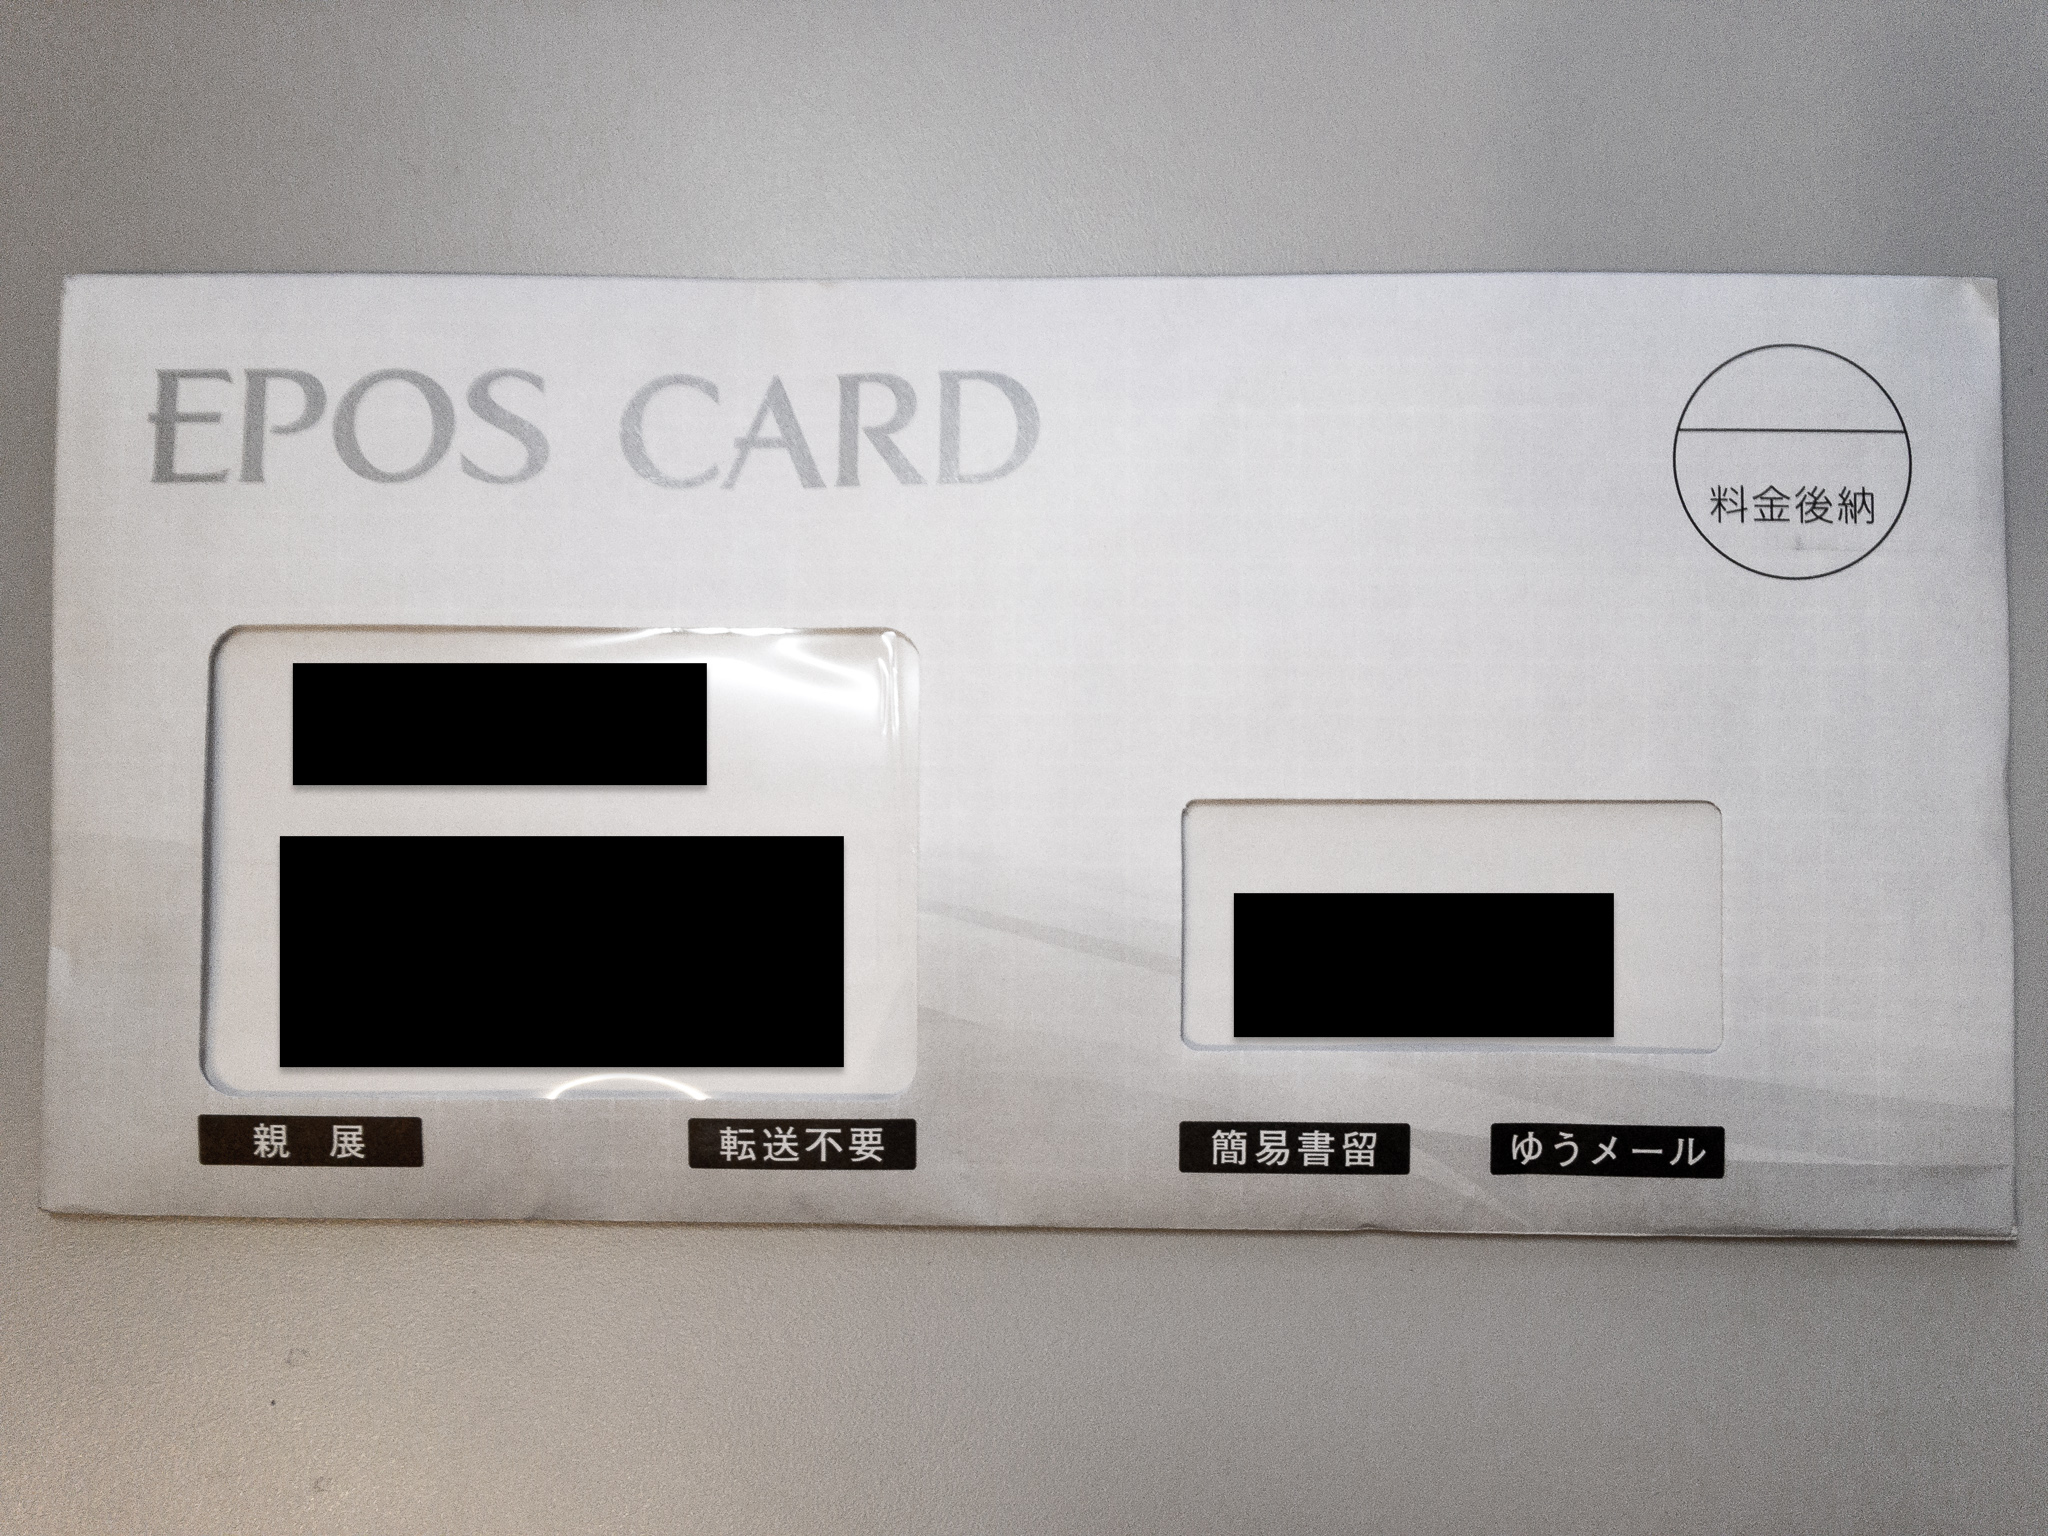 エポスゴールドカードが不正利用されて 3日で補償してもらった話 旅行好きの大阪人ブログ